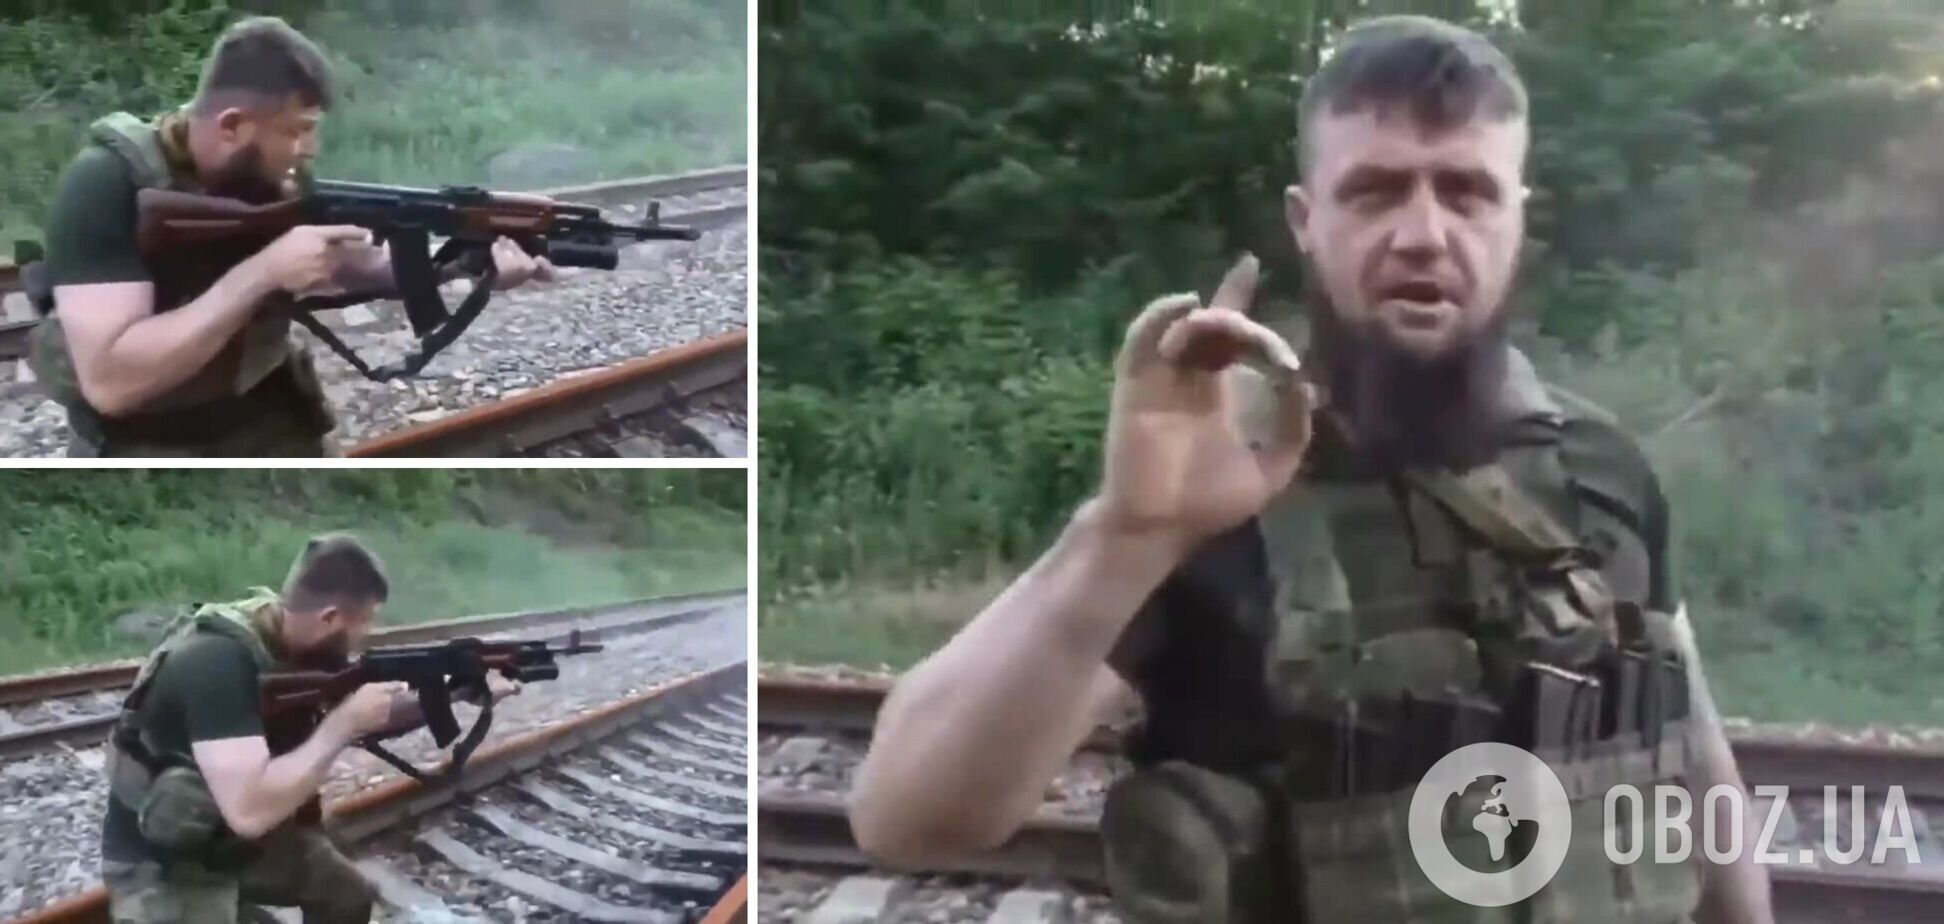 Кадыровский тик-токер вступил в жесткую схватку с железнодорожным полотном. Видео